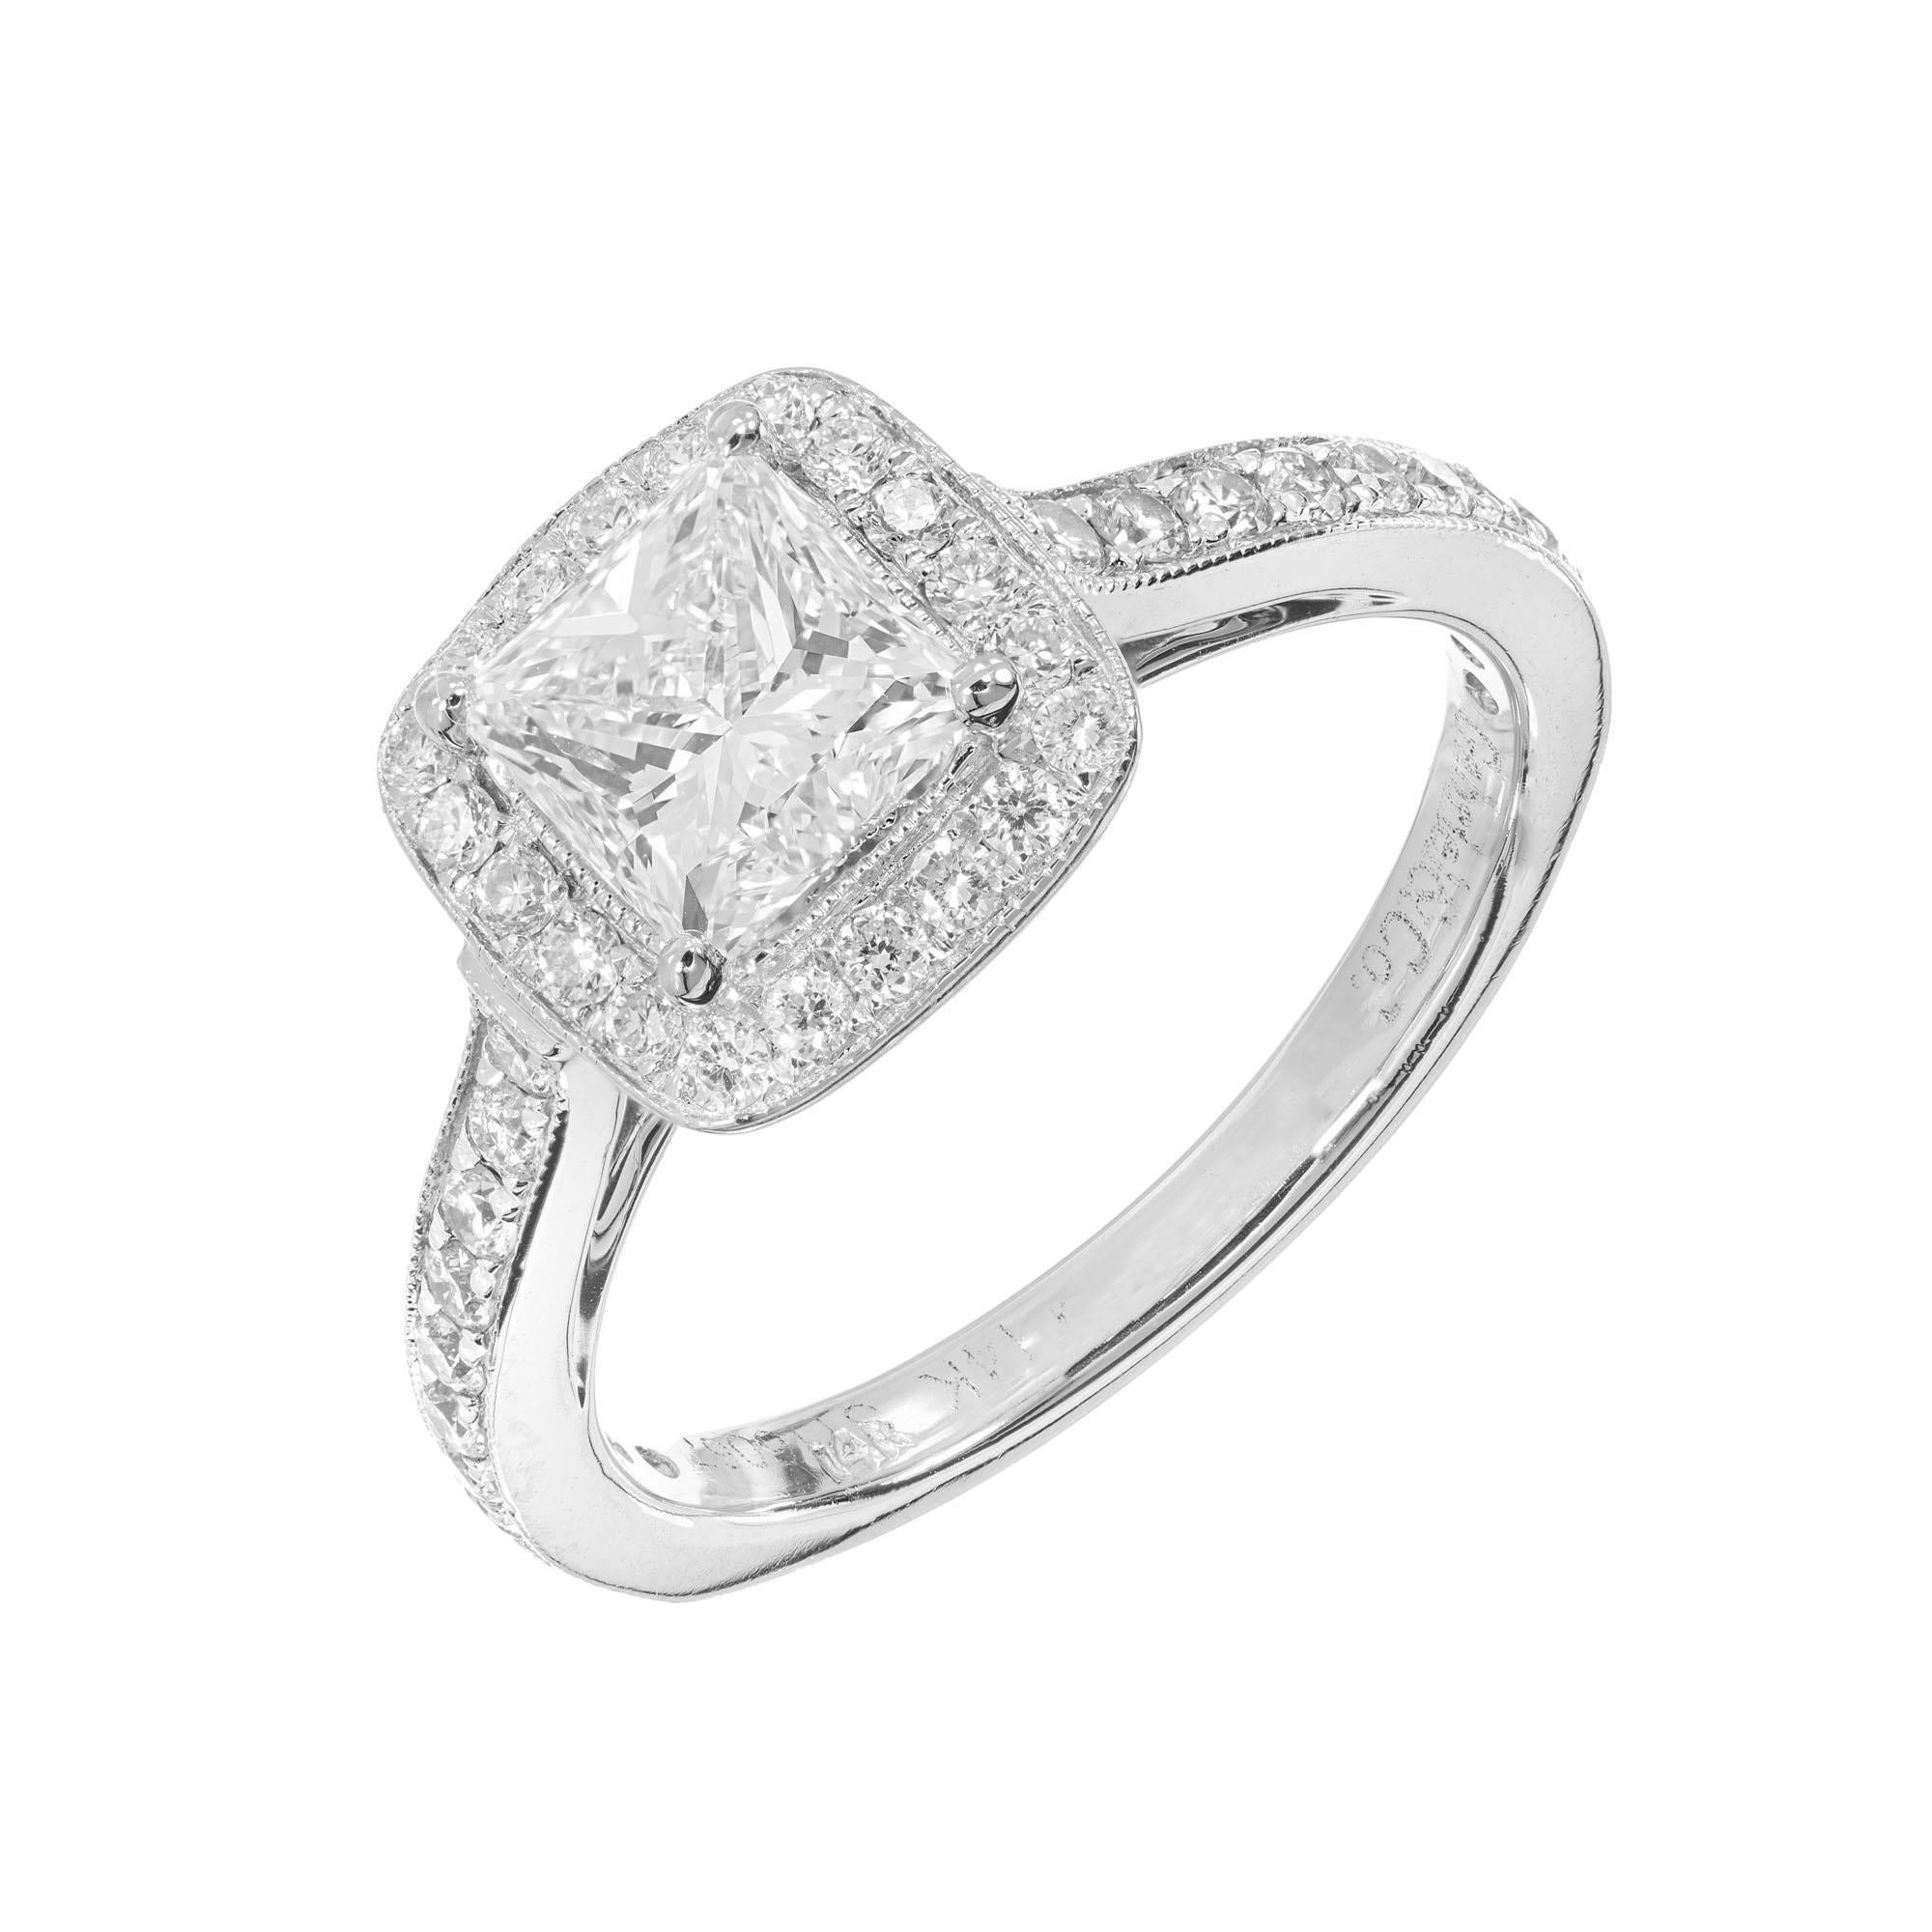 Gabriel Stil S116067 Diamant-Halo-Verlobungsring. GIA-zertifizierter Mittelstein im Prinzessinnenschliff mit einem Halo aus runden Diamanten in einer Fassung aus 14 Karat Weißgold mit runden Diamanten entlang des Schafts.   

1 Diamant im